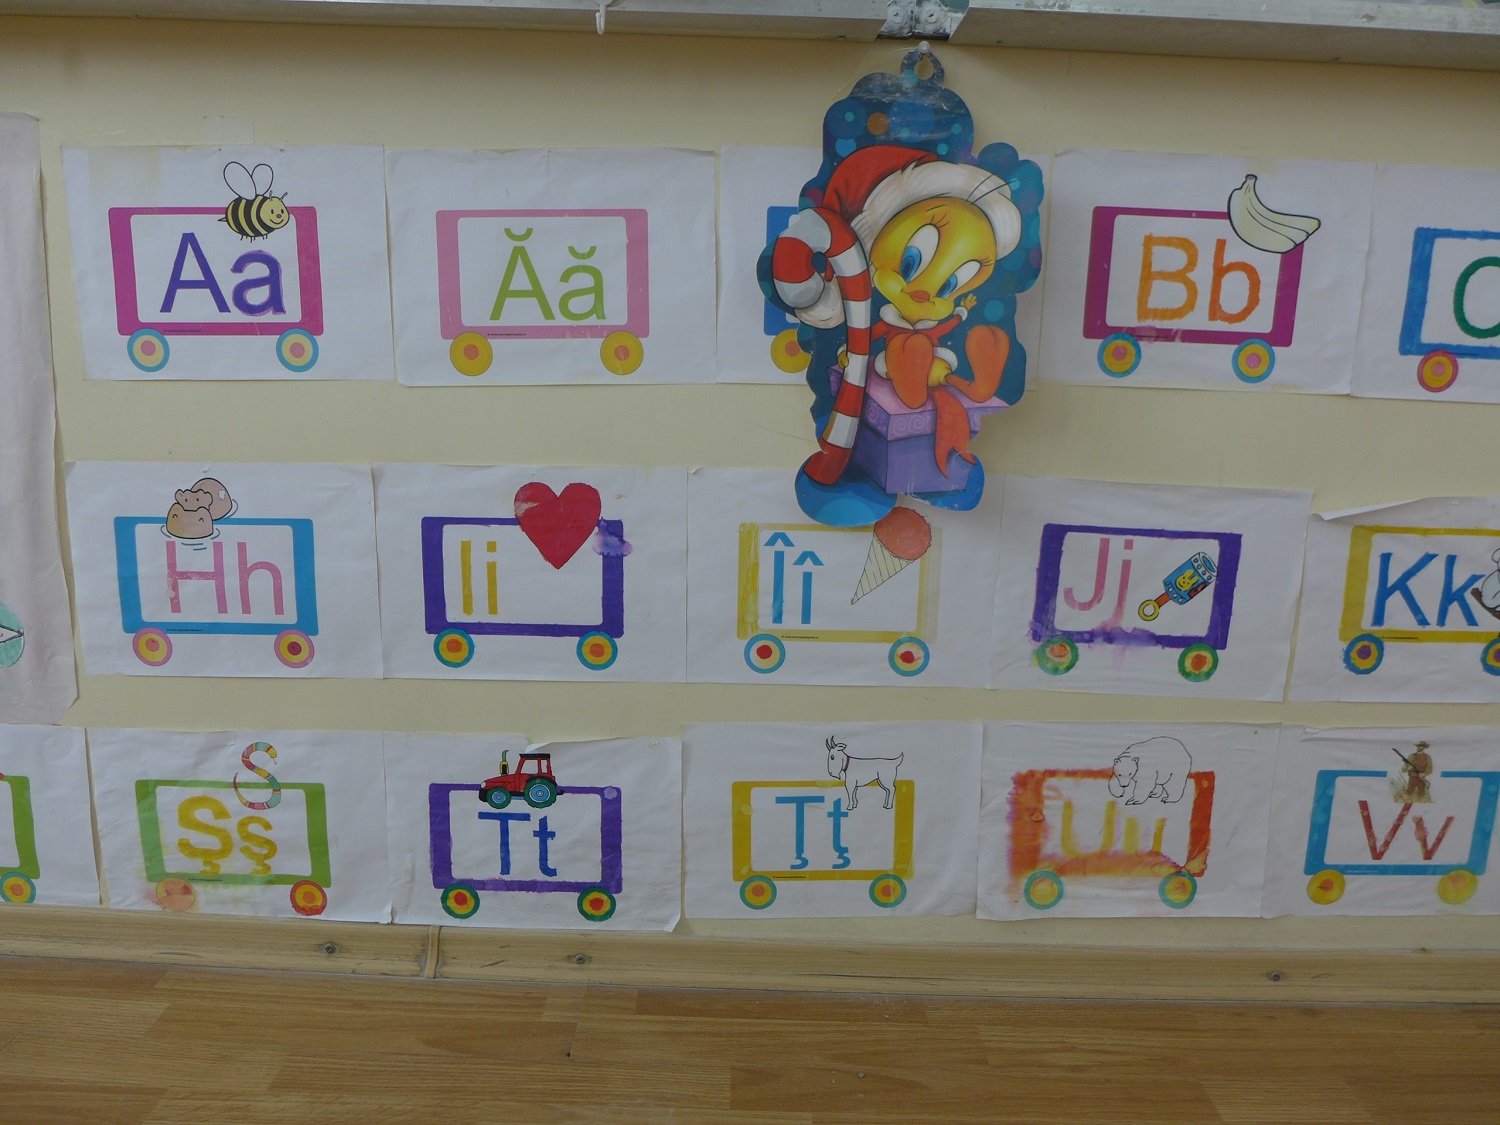 L’alphabet roumain, accroché dans la classe de primaire.